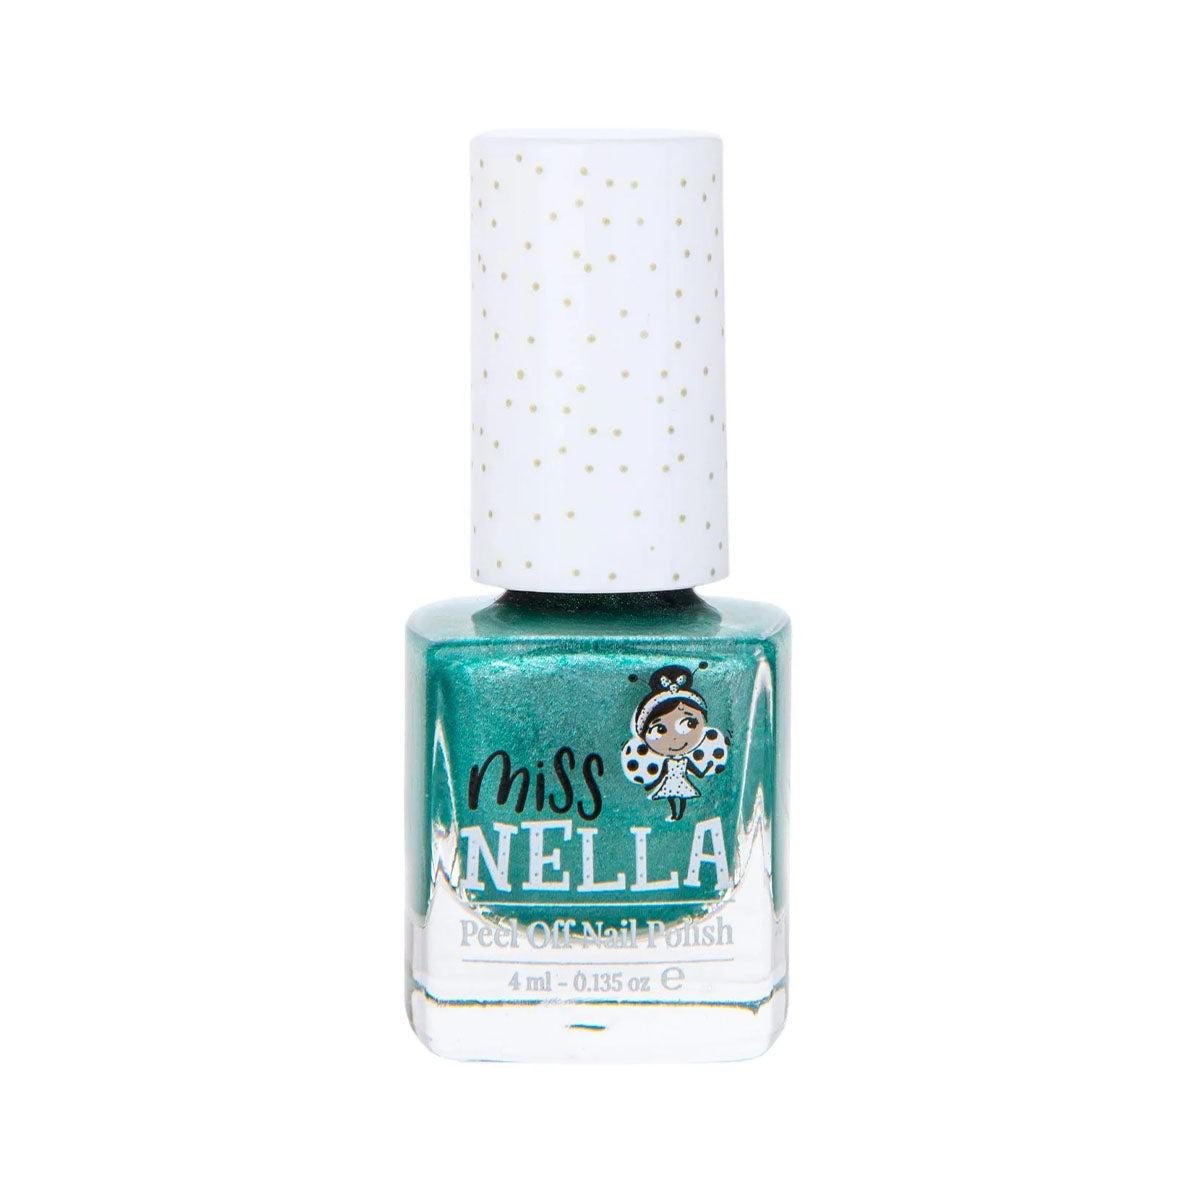 Laat de nageltjes van jouw kindje shinen met de nagellak dino-rific van het merk Miss Nella. De peel off nagellak is speciaal ontworpen voor kinderen en is vrij van chemicaliën. In verschillende kleuren. VanZus